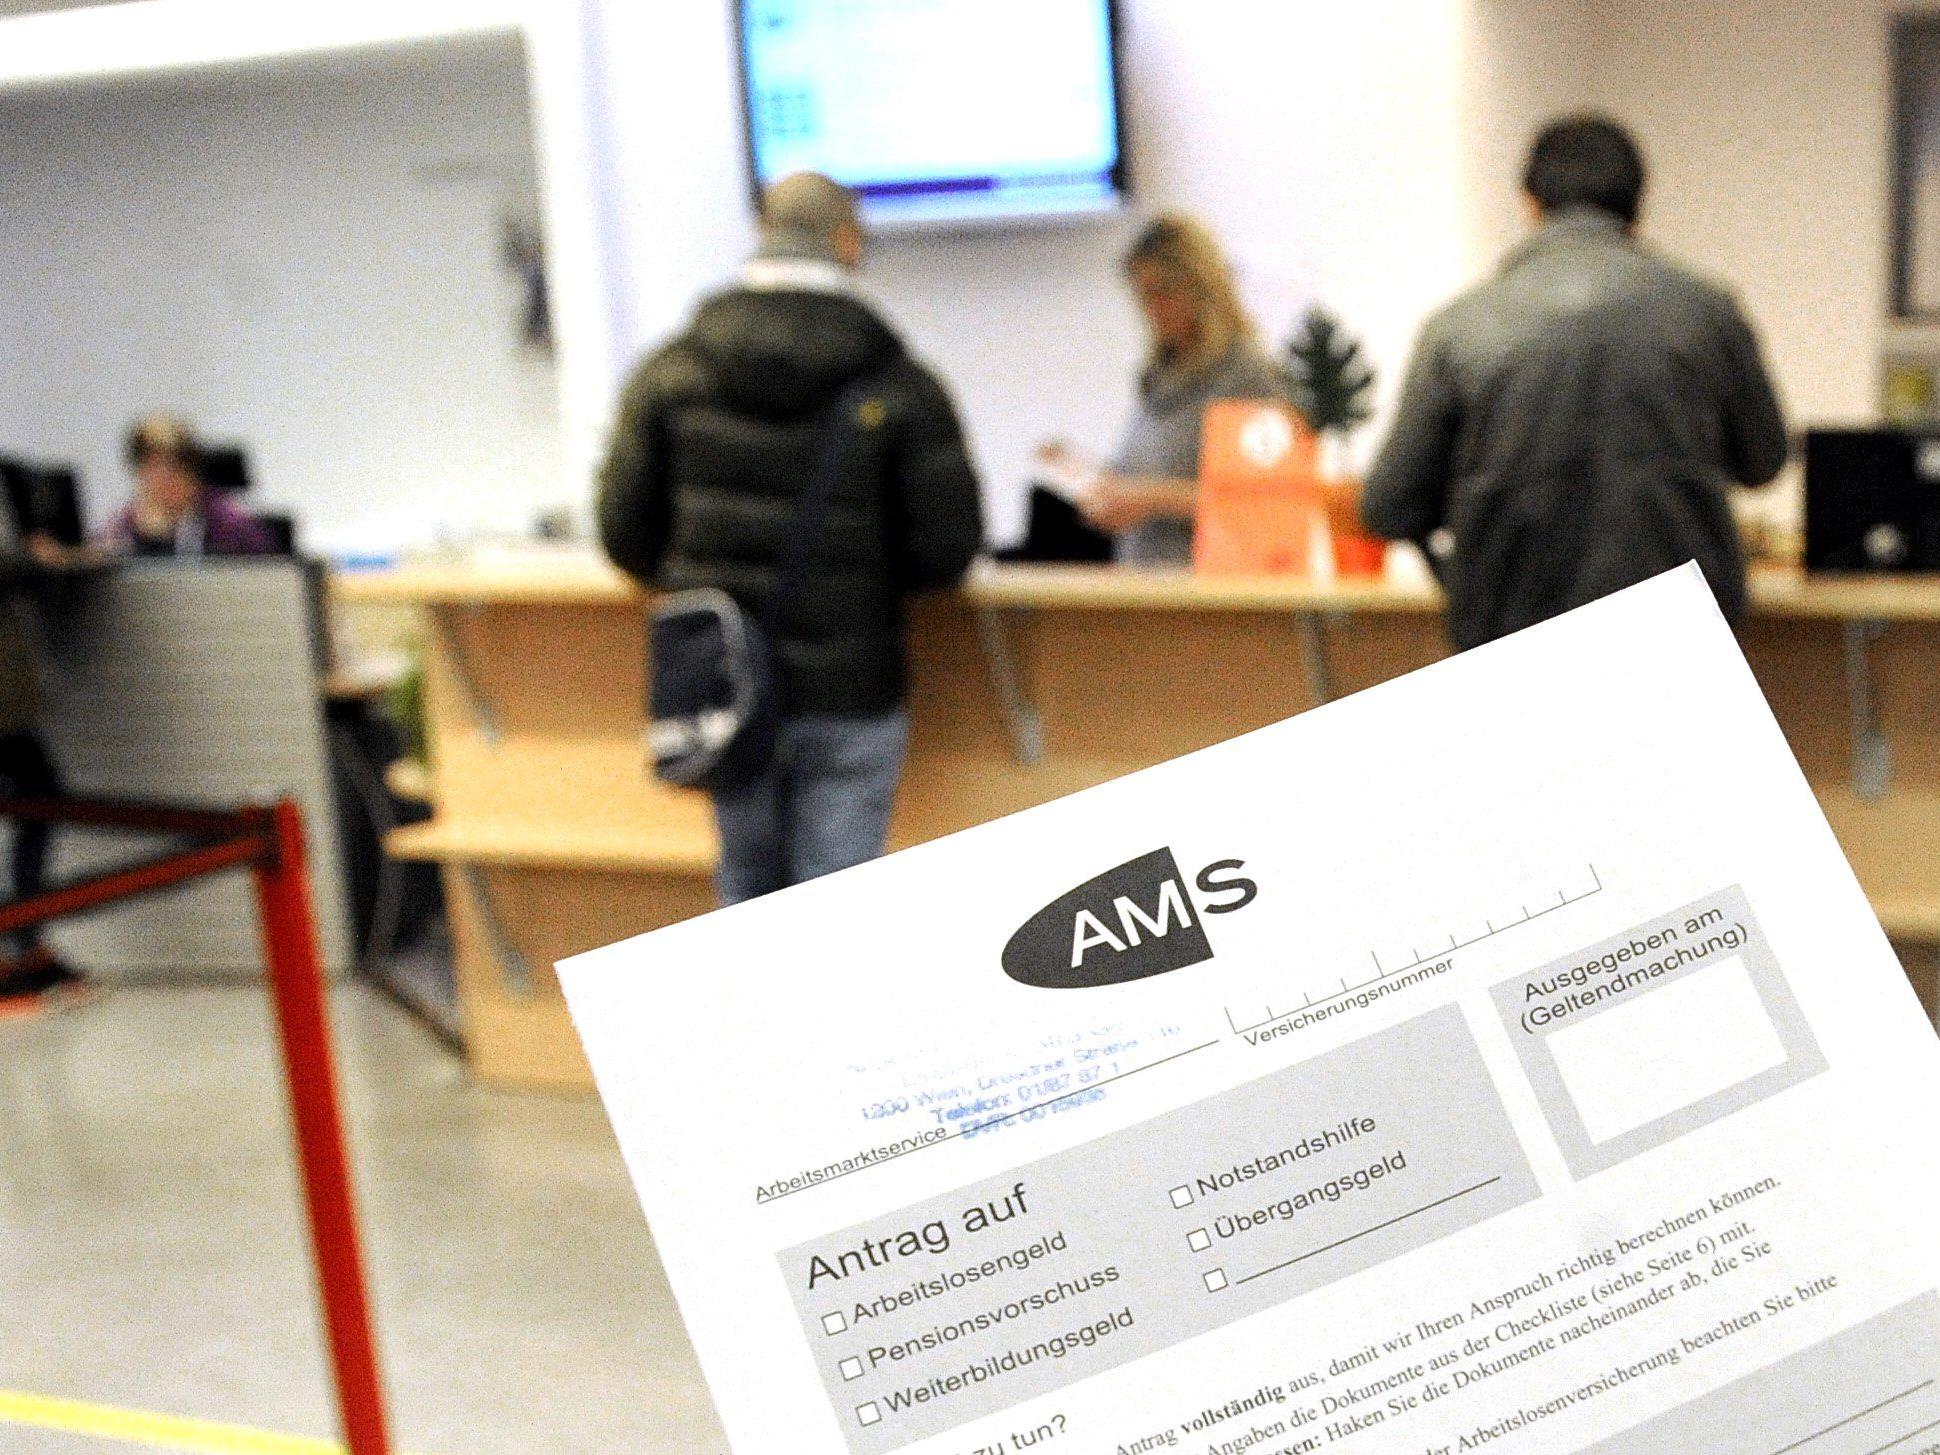 Ab 2015 sollen 100 neue Berater am AMS eingestellt werden.